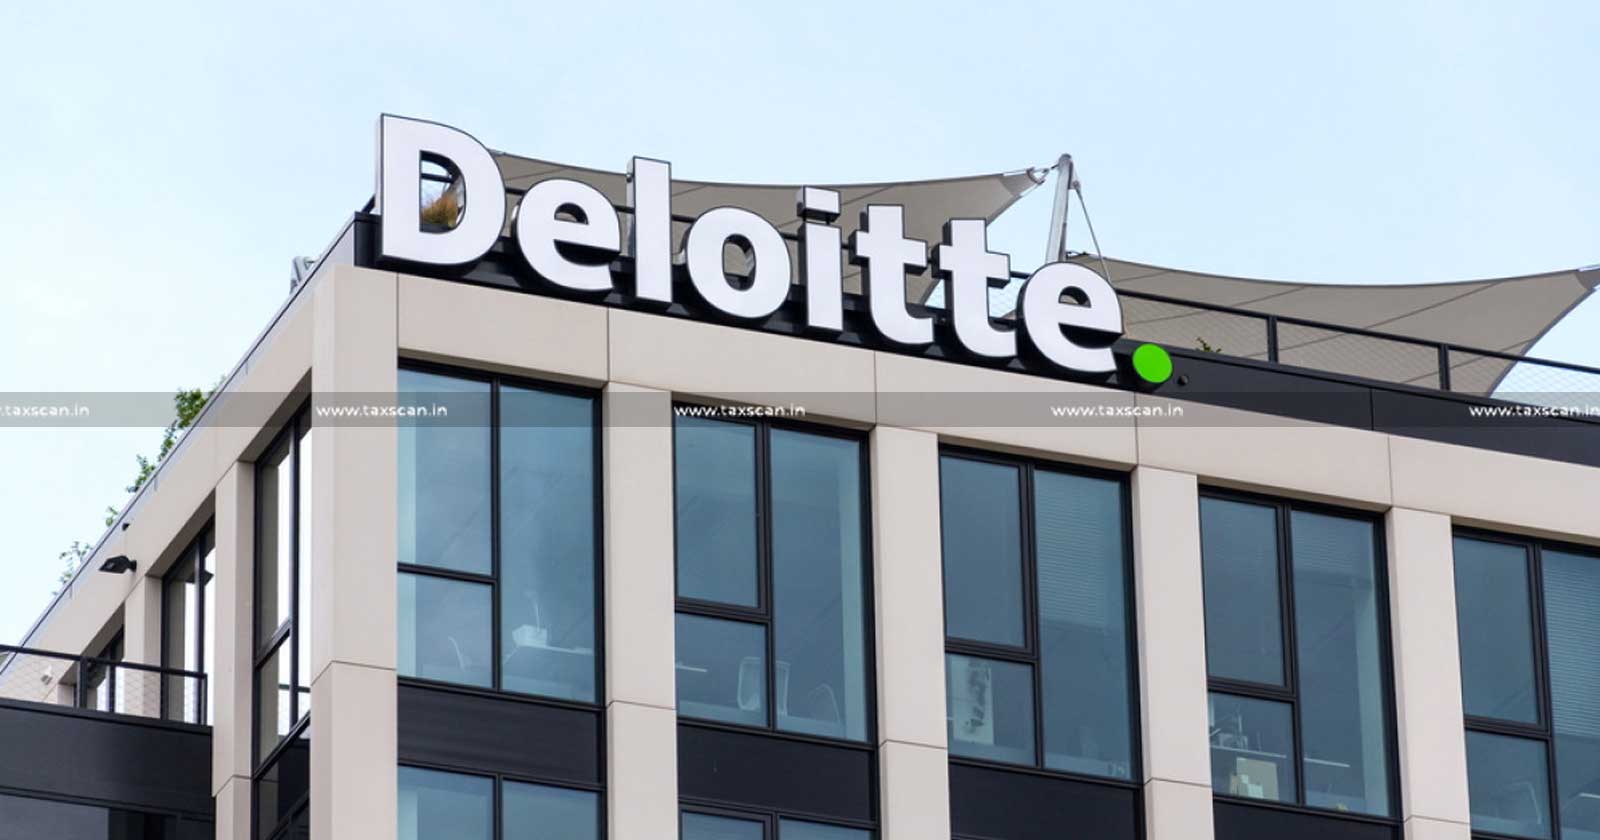 CA Vacancy in Deloitte - MBA Vacancy in Deloitte - CA Hiring in Deloitte - CA Opening in Deloitte - CA Oppportunities in Deloitte - taxscan